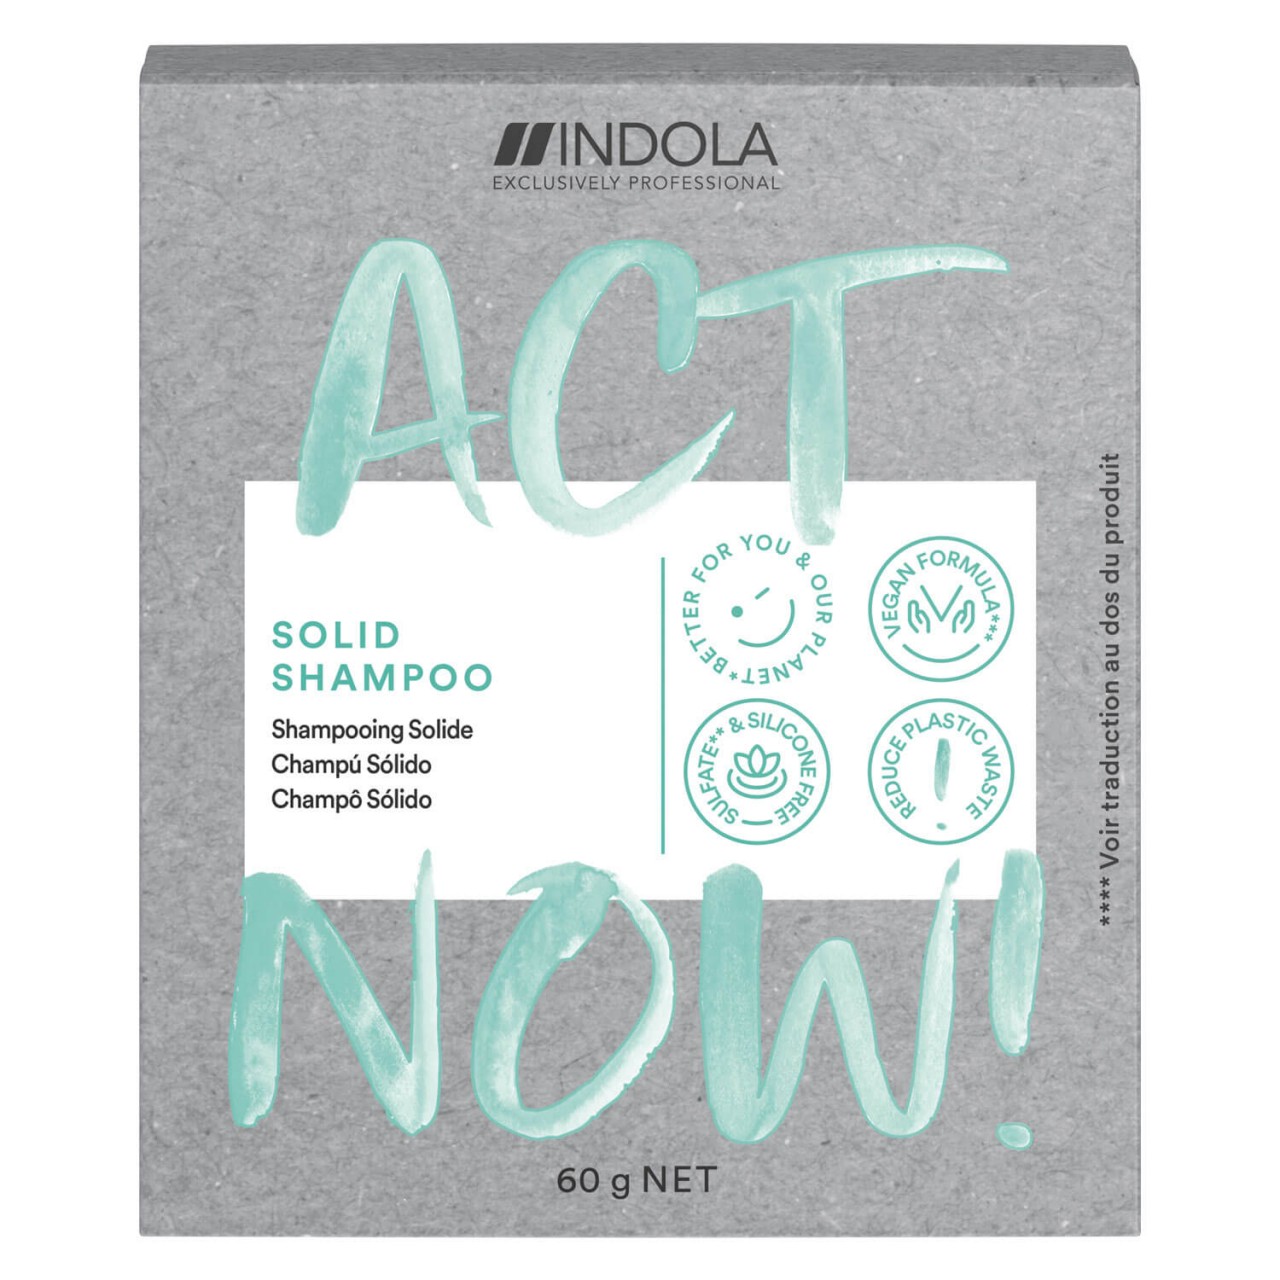 ACT NOW - Solid Shampoo von Indola